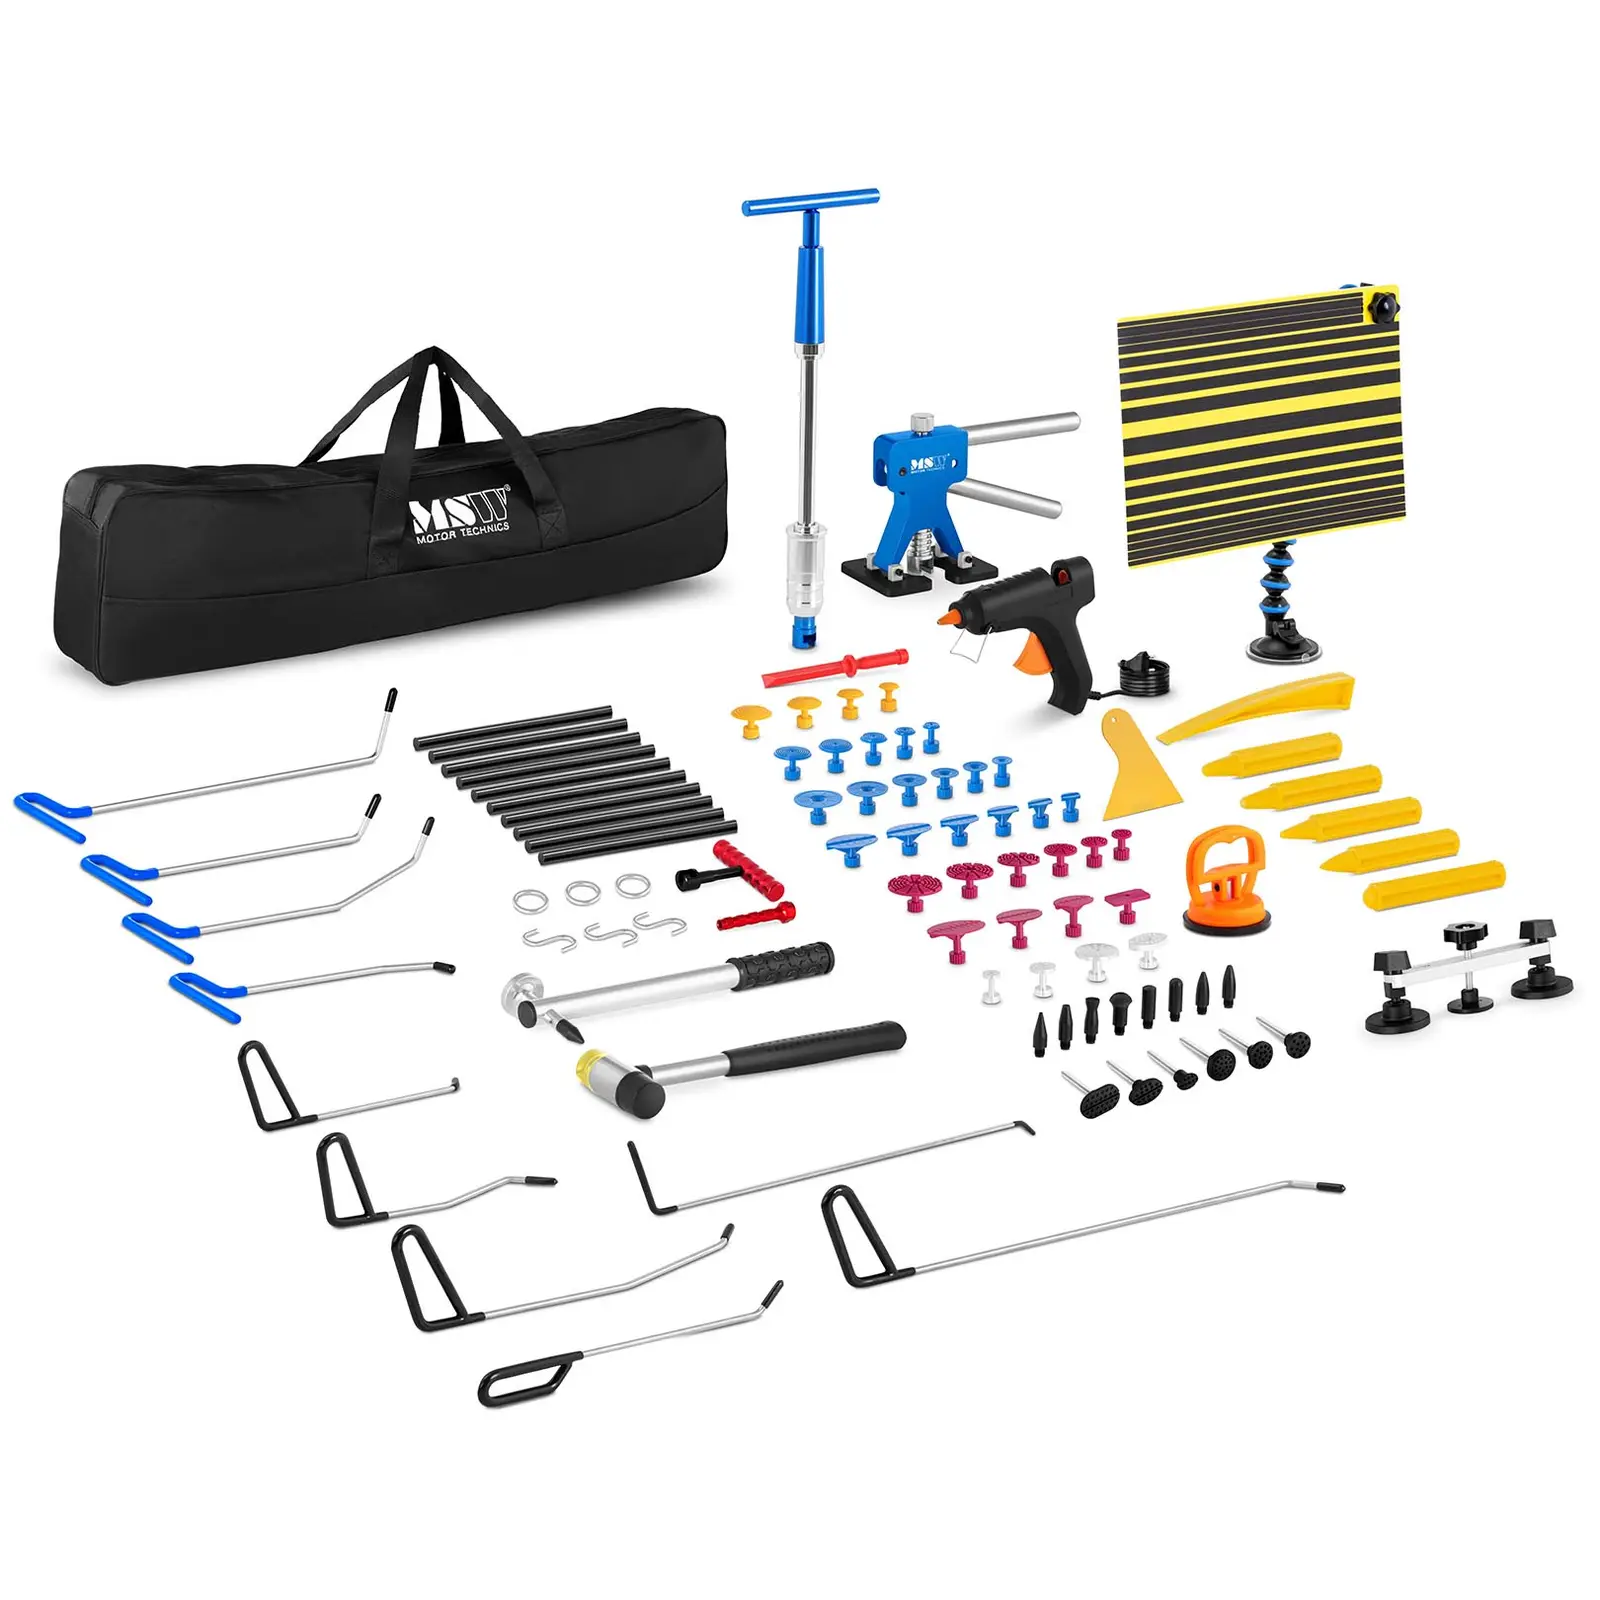 Kit de herramientas para reparar abolladuras - 85 piezas